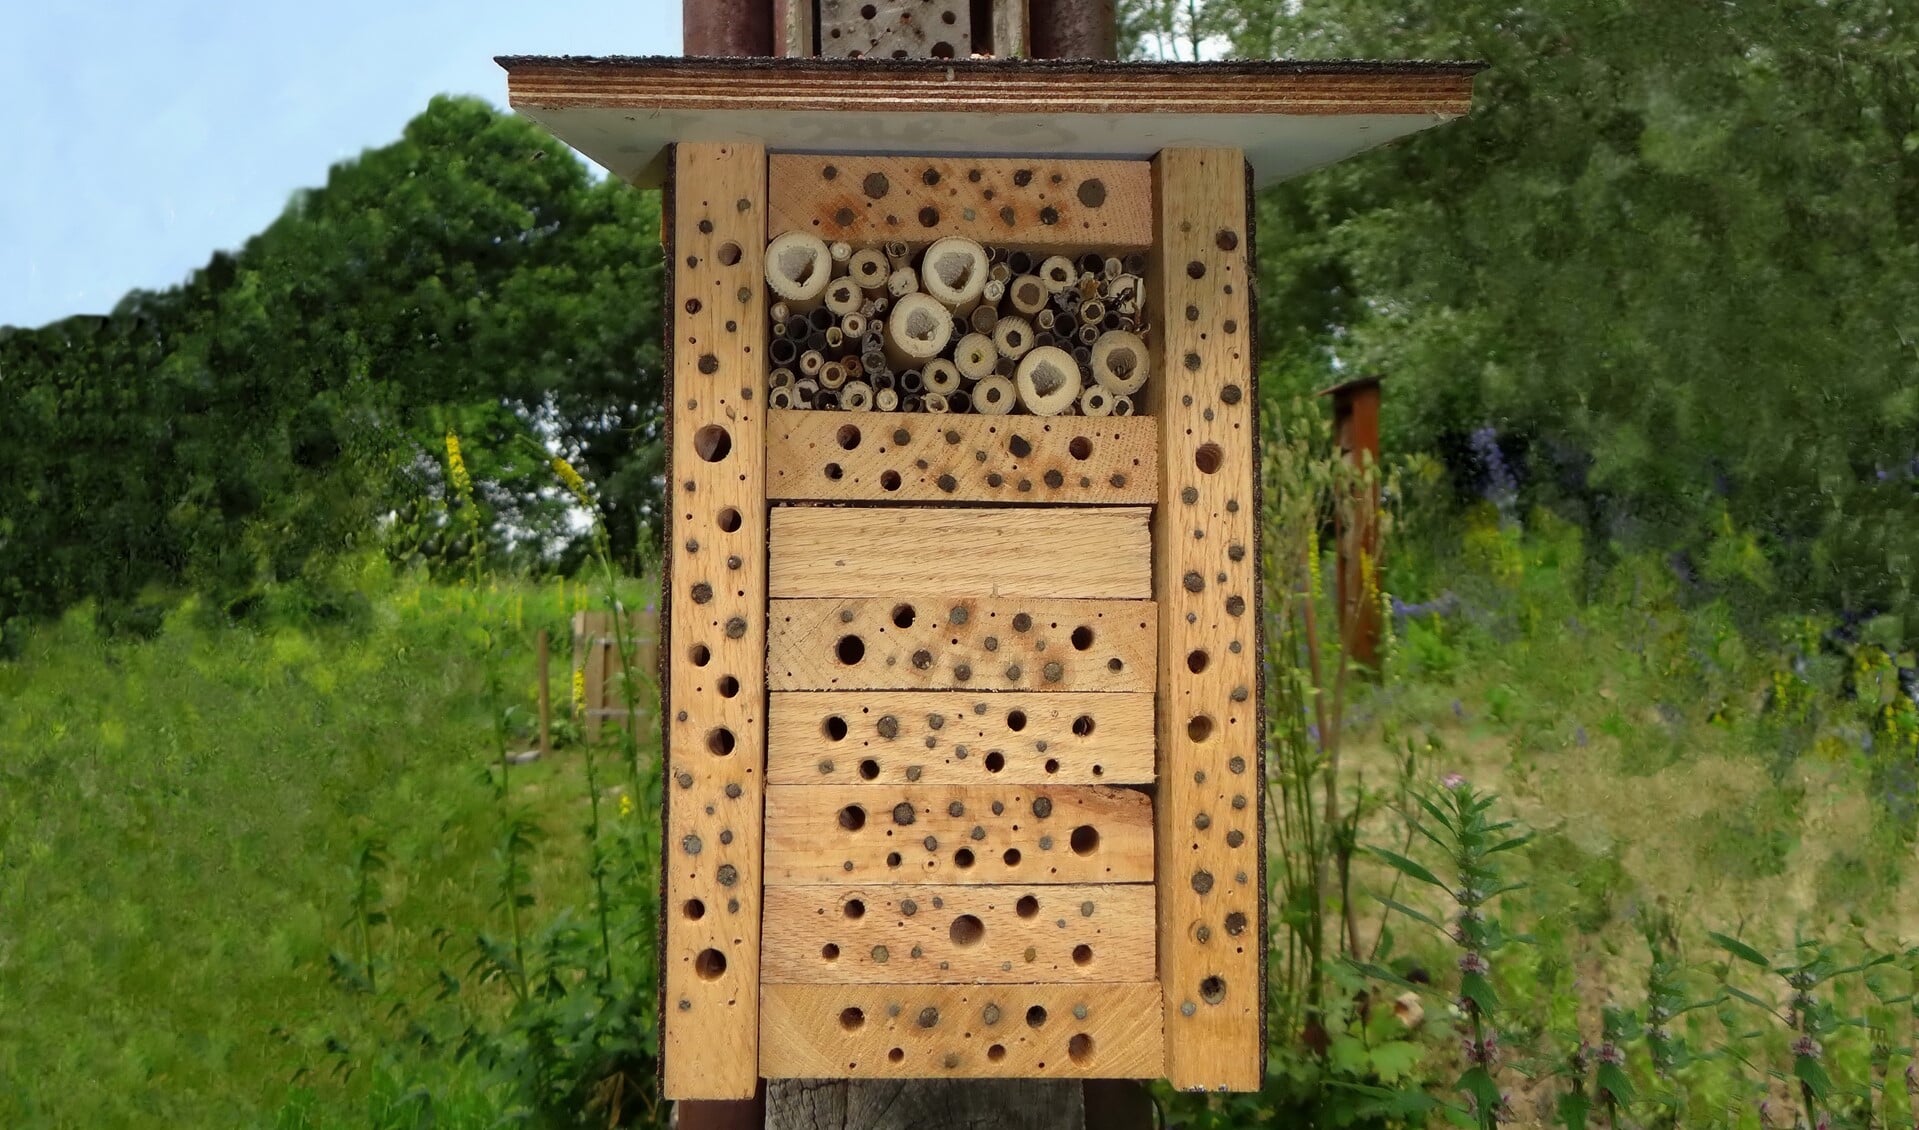 De afgesloten holletjes zijn door wilde bijen in gebruik. (foto: Pieter van Breugel)